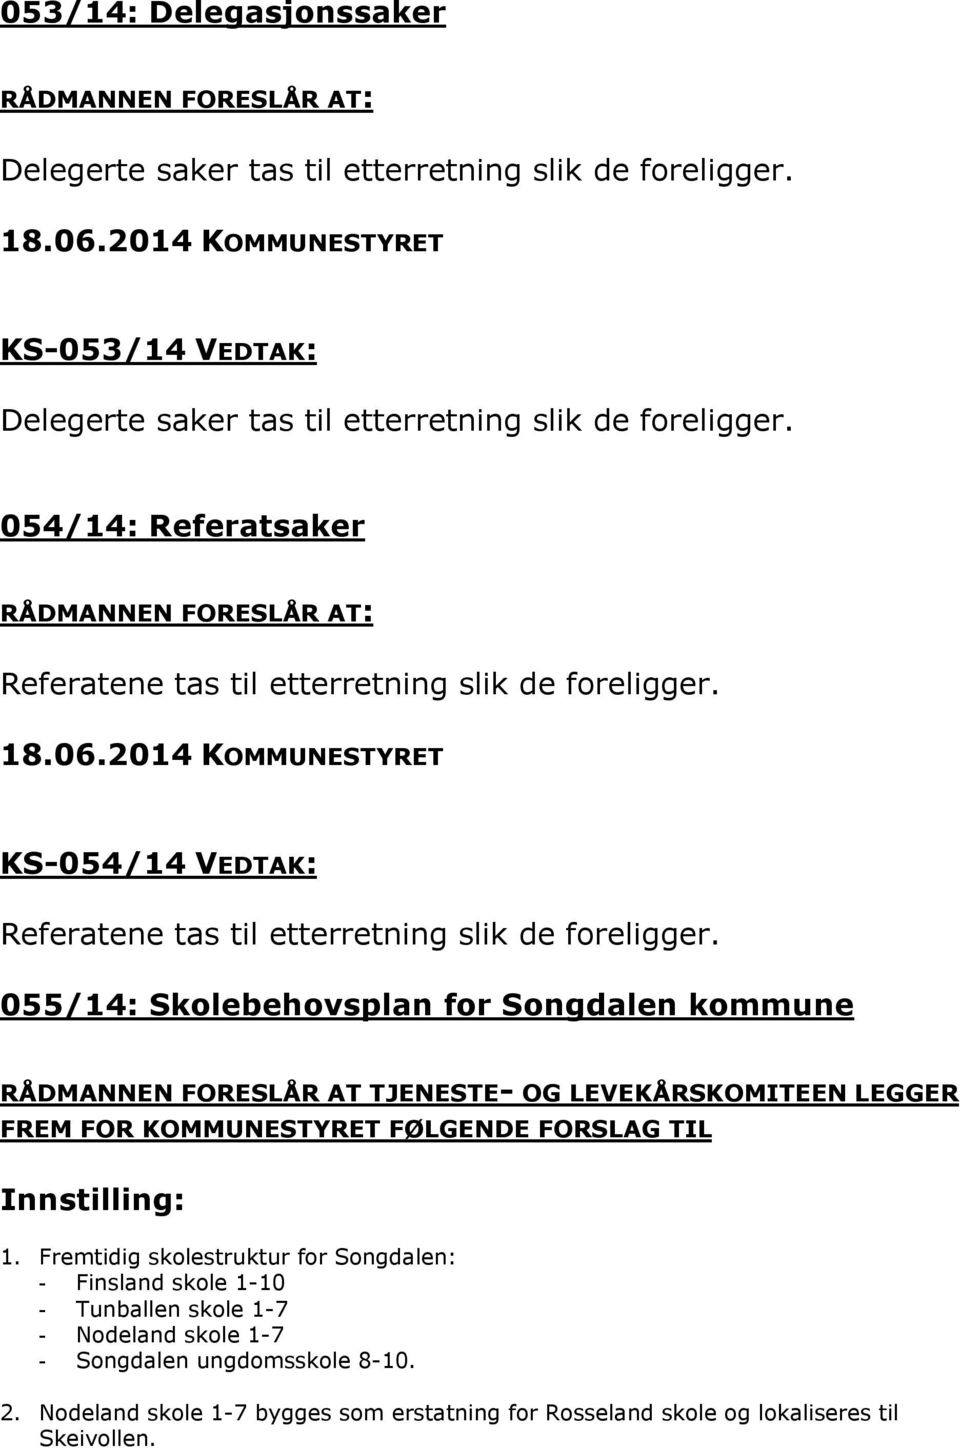 055/14: Skolebehovsplan for Songdalen kommune RÅDMANNEN FORESLÅR AT TJENESTE- OG LEVEKÅRSKOMITEEN LEGGER FREM FOR KOMMUNESTYRET FØLGENDE FORSLAG TIL Innstilling: 1.